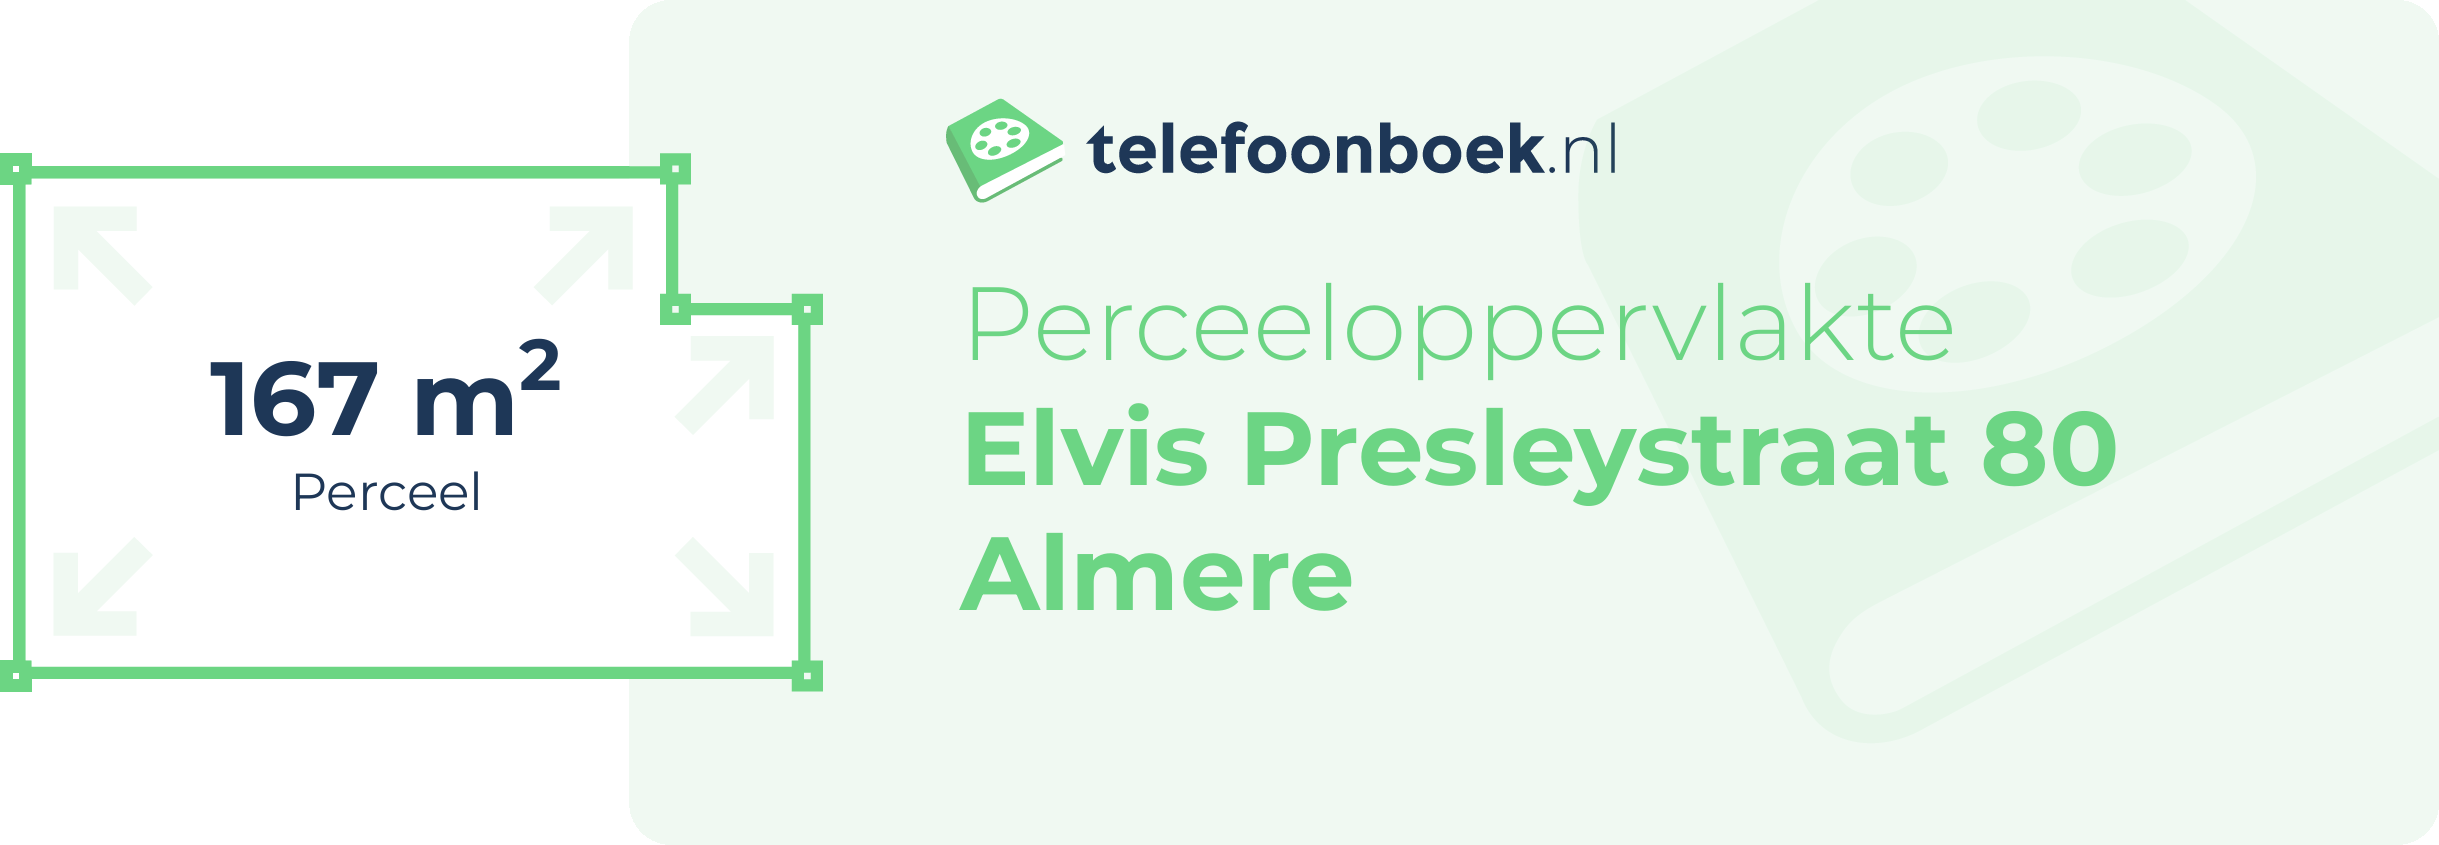 Perceeloppervlakte Elvis Presleystraat 80 Almere